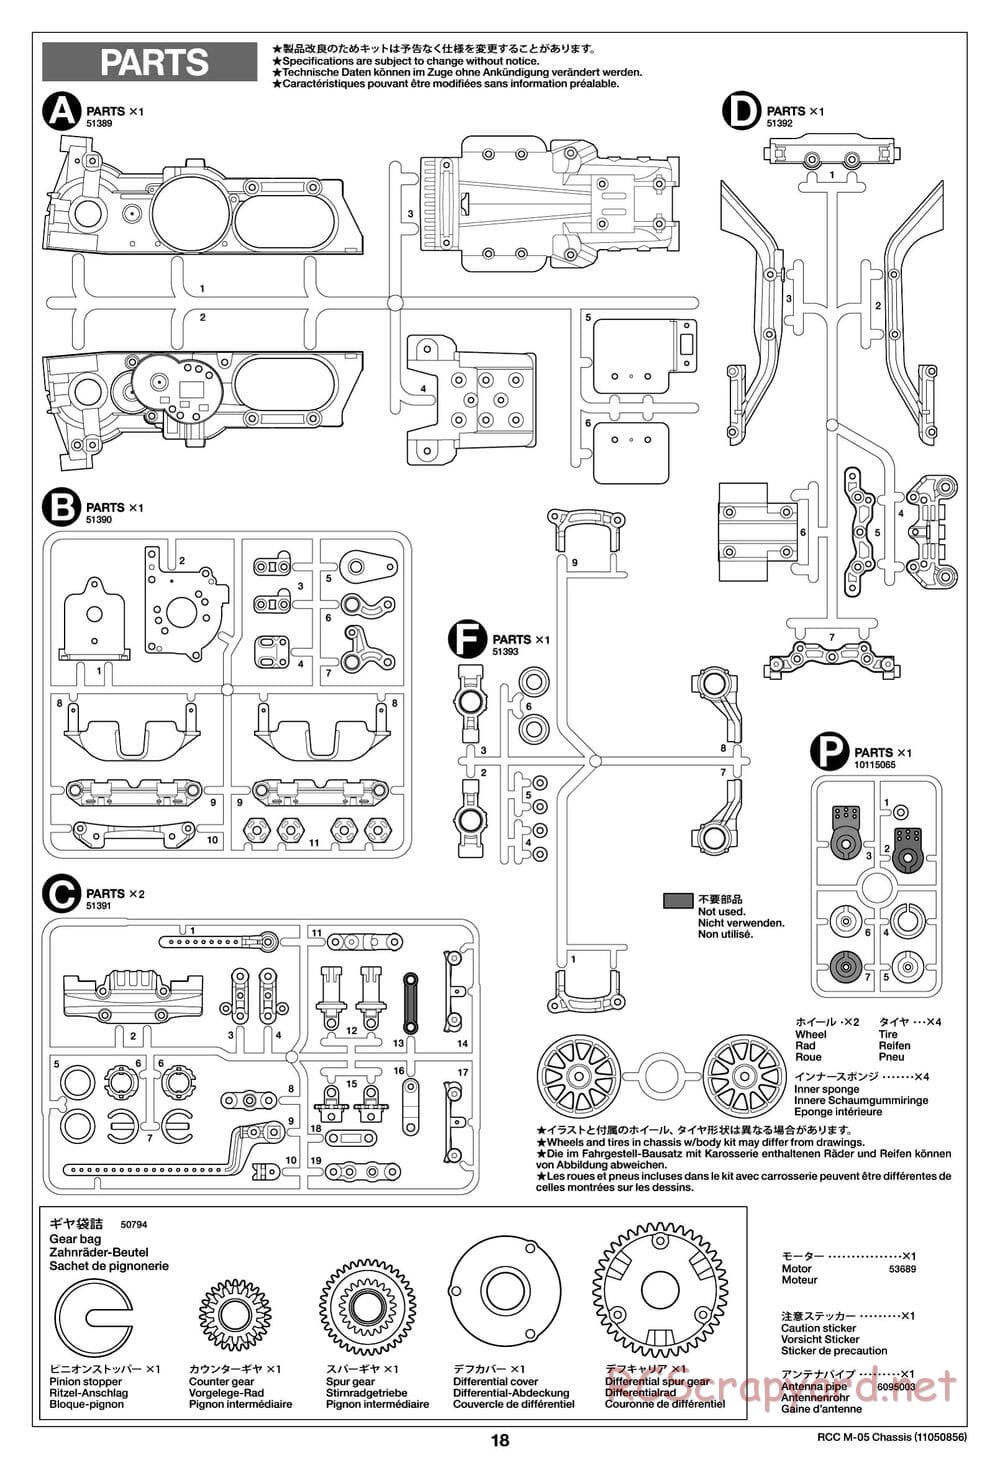 Tamiya - M-05 Chassis - Manual - Page 18